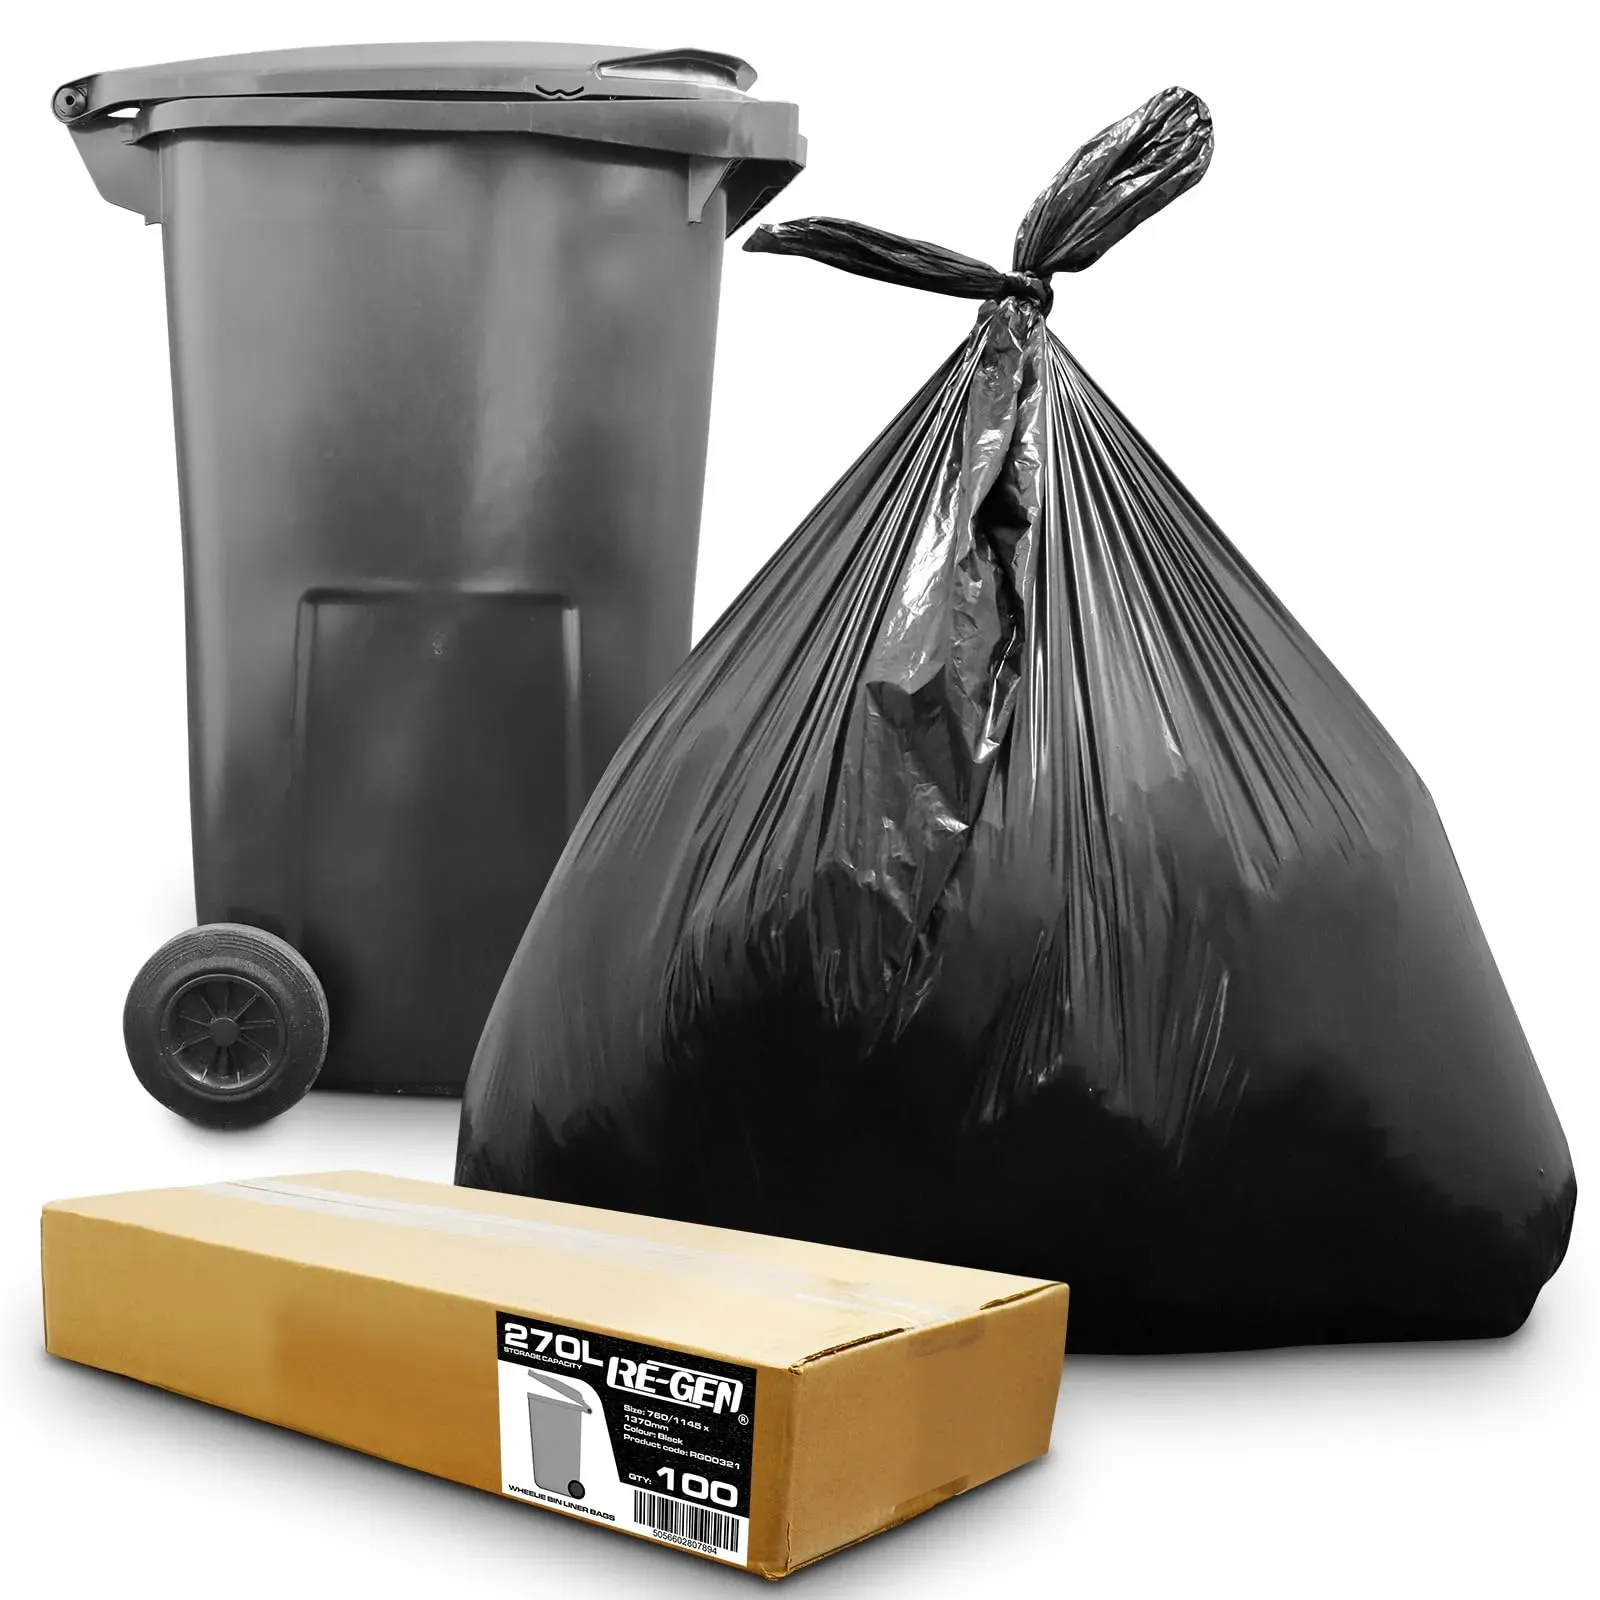 RE-GEN 100er-Pack | 1 komplett flach verpackte Box | 270 l, 20 kg Traglast, robuste schwarze Müllsäcke für Mülltonnen, für den täglichen Gebrauch, industrielle Stärke, hochwertige Müllsäcke für den Au